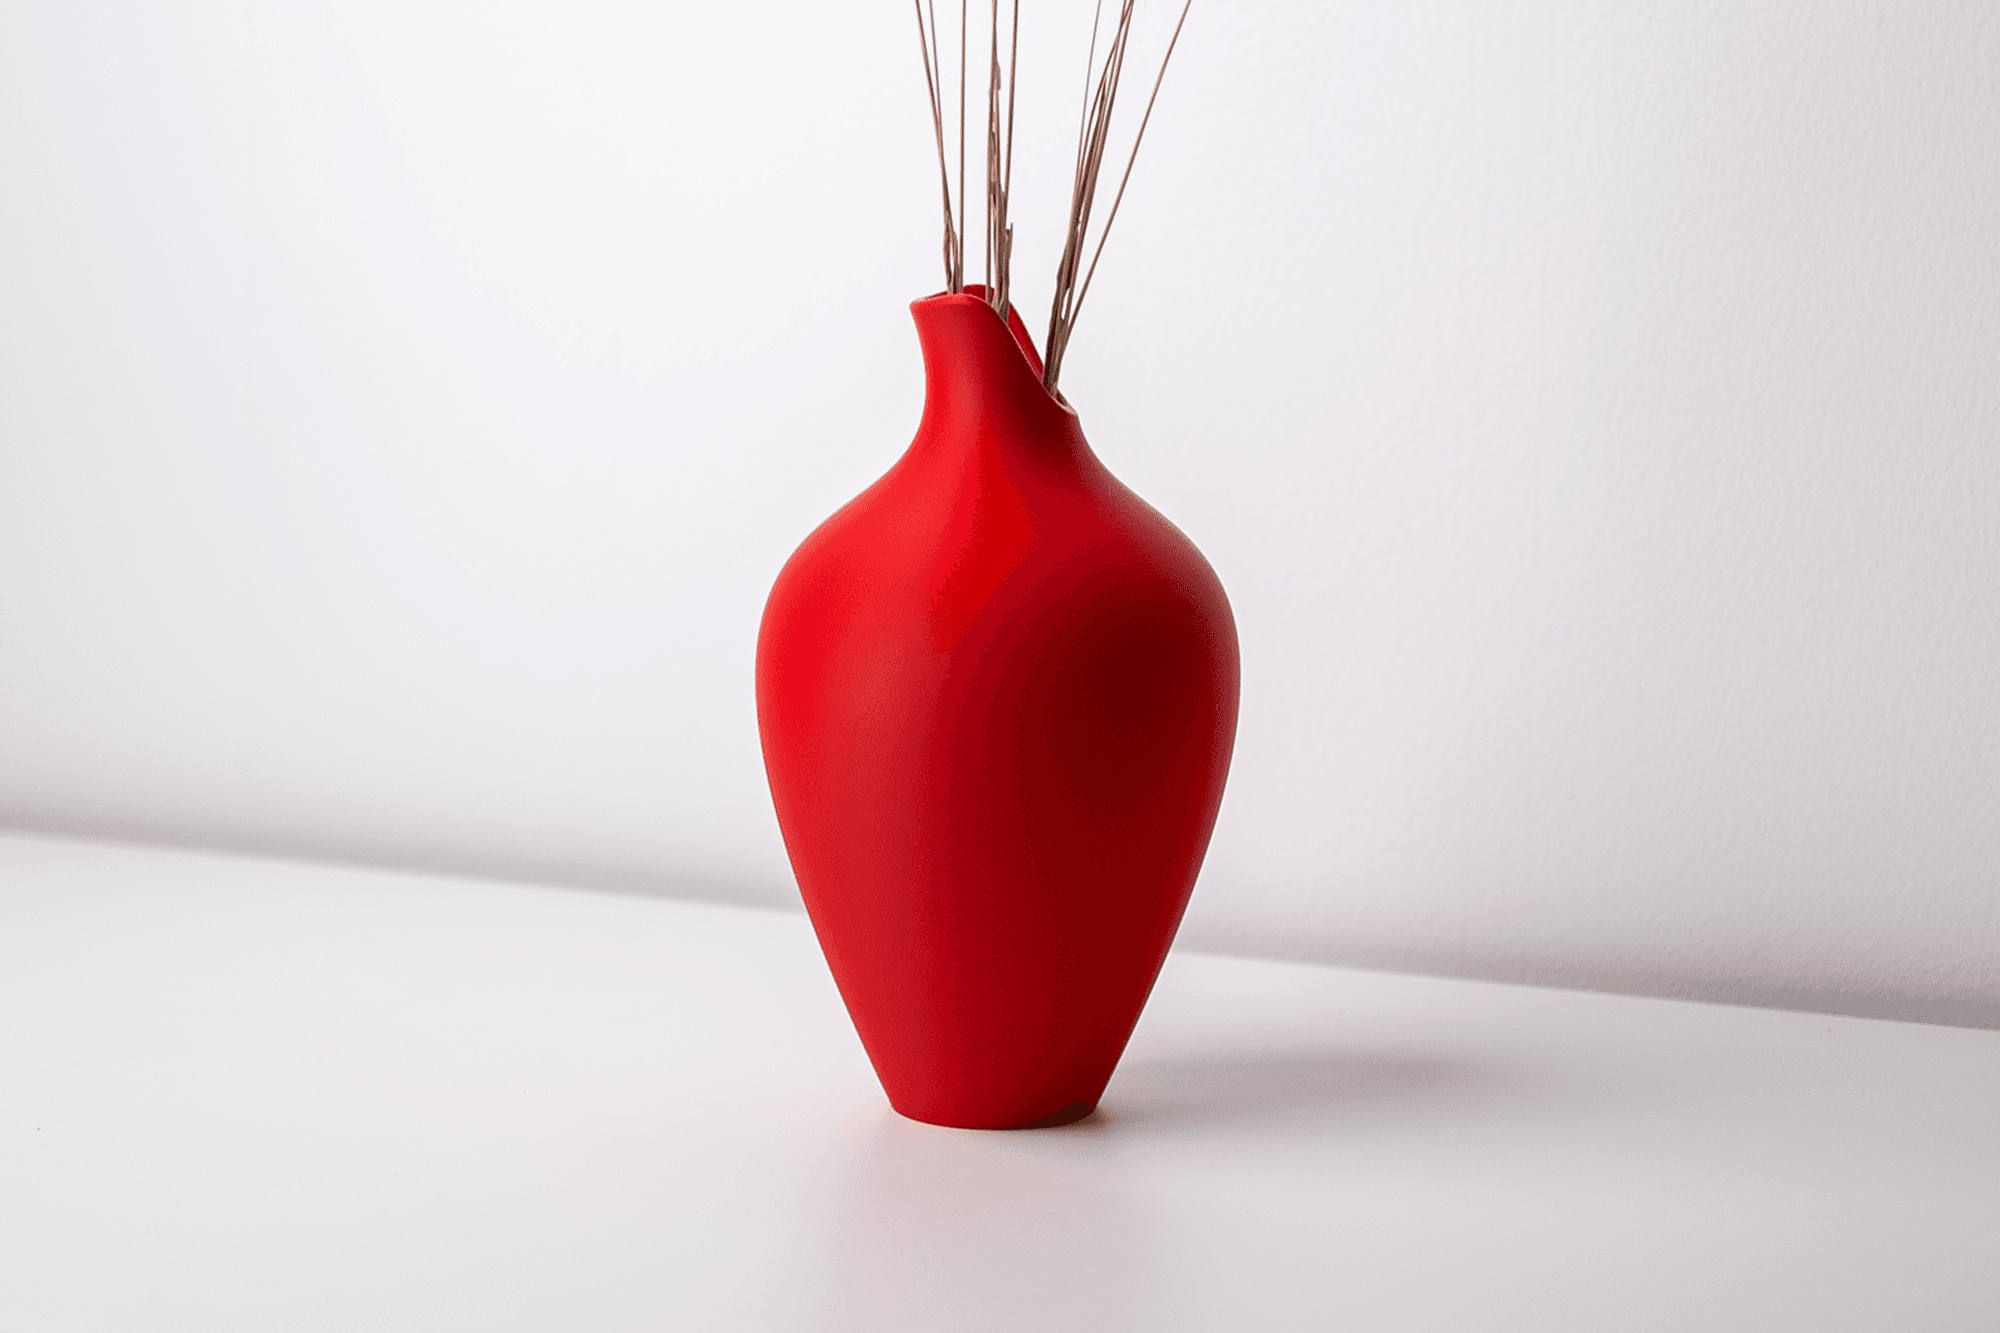 Vase No. 3 3d model